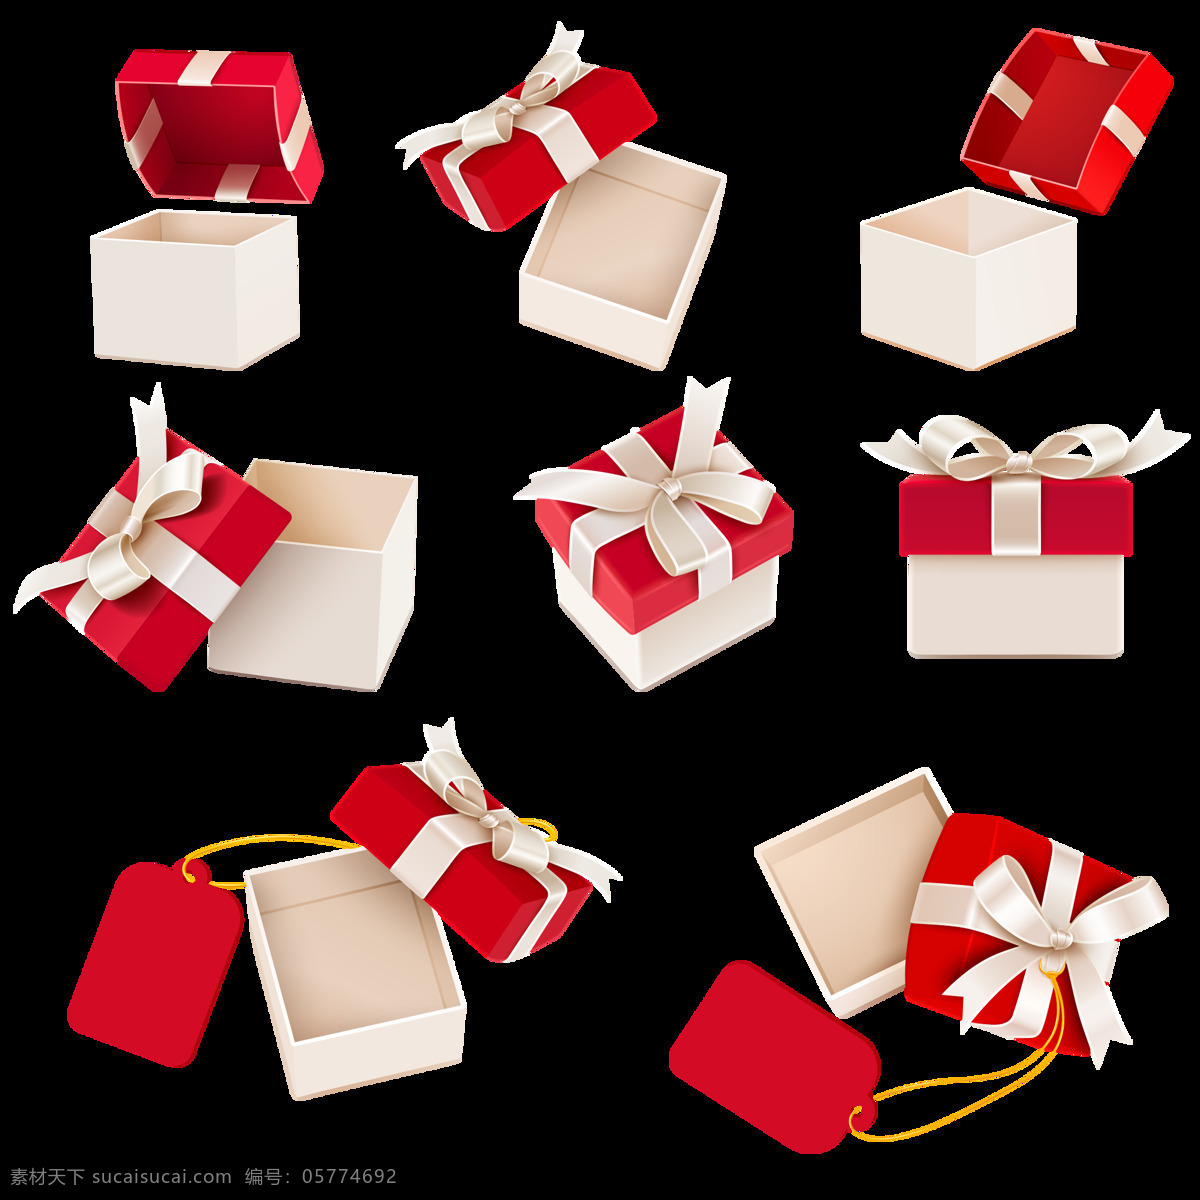 打开 包装 礼品盒 活动礼品盒 礼物 打开的礼盒 节日 设计素材 元素素材 丝带 卡片 模版 红色 节日素材 包装盒